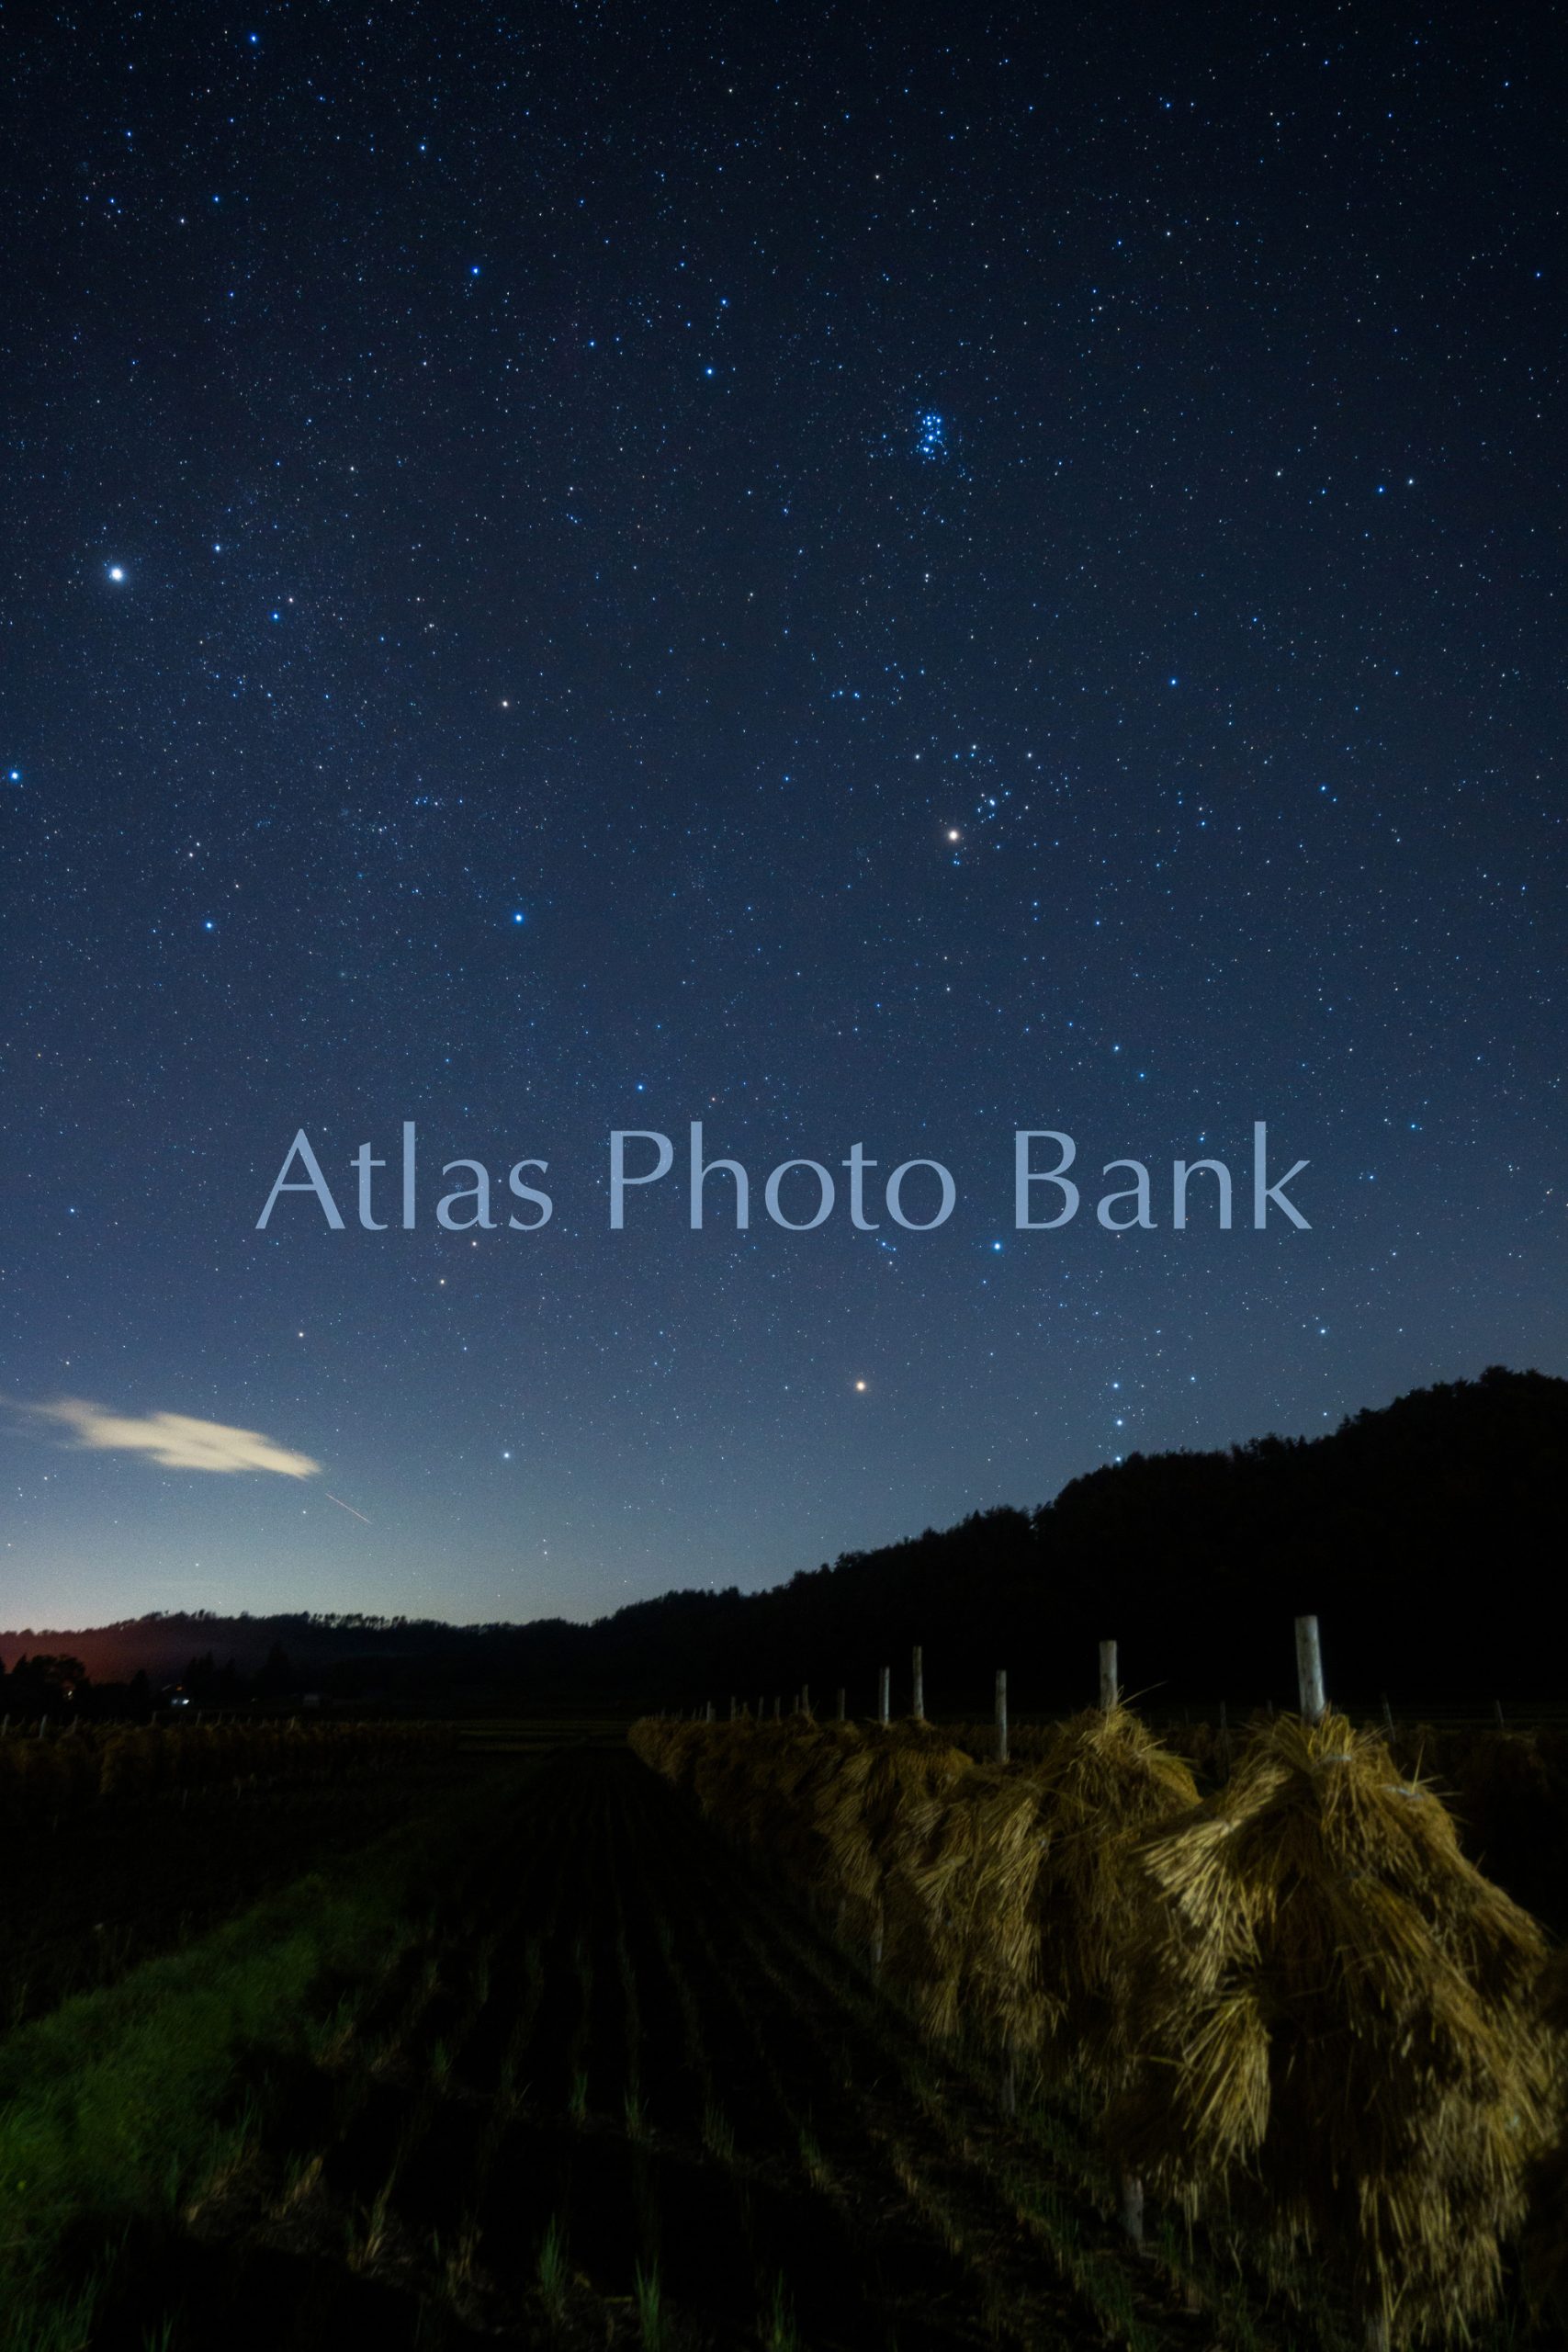 SSP-201-稲刈りの終わった田んぼの上に輝く冬の星座